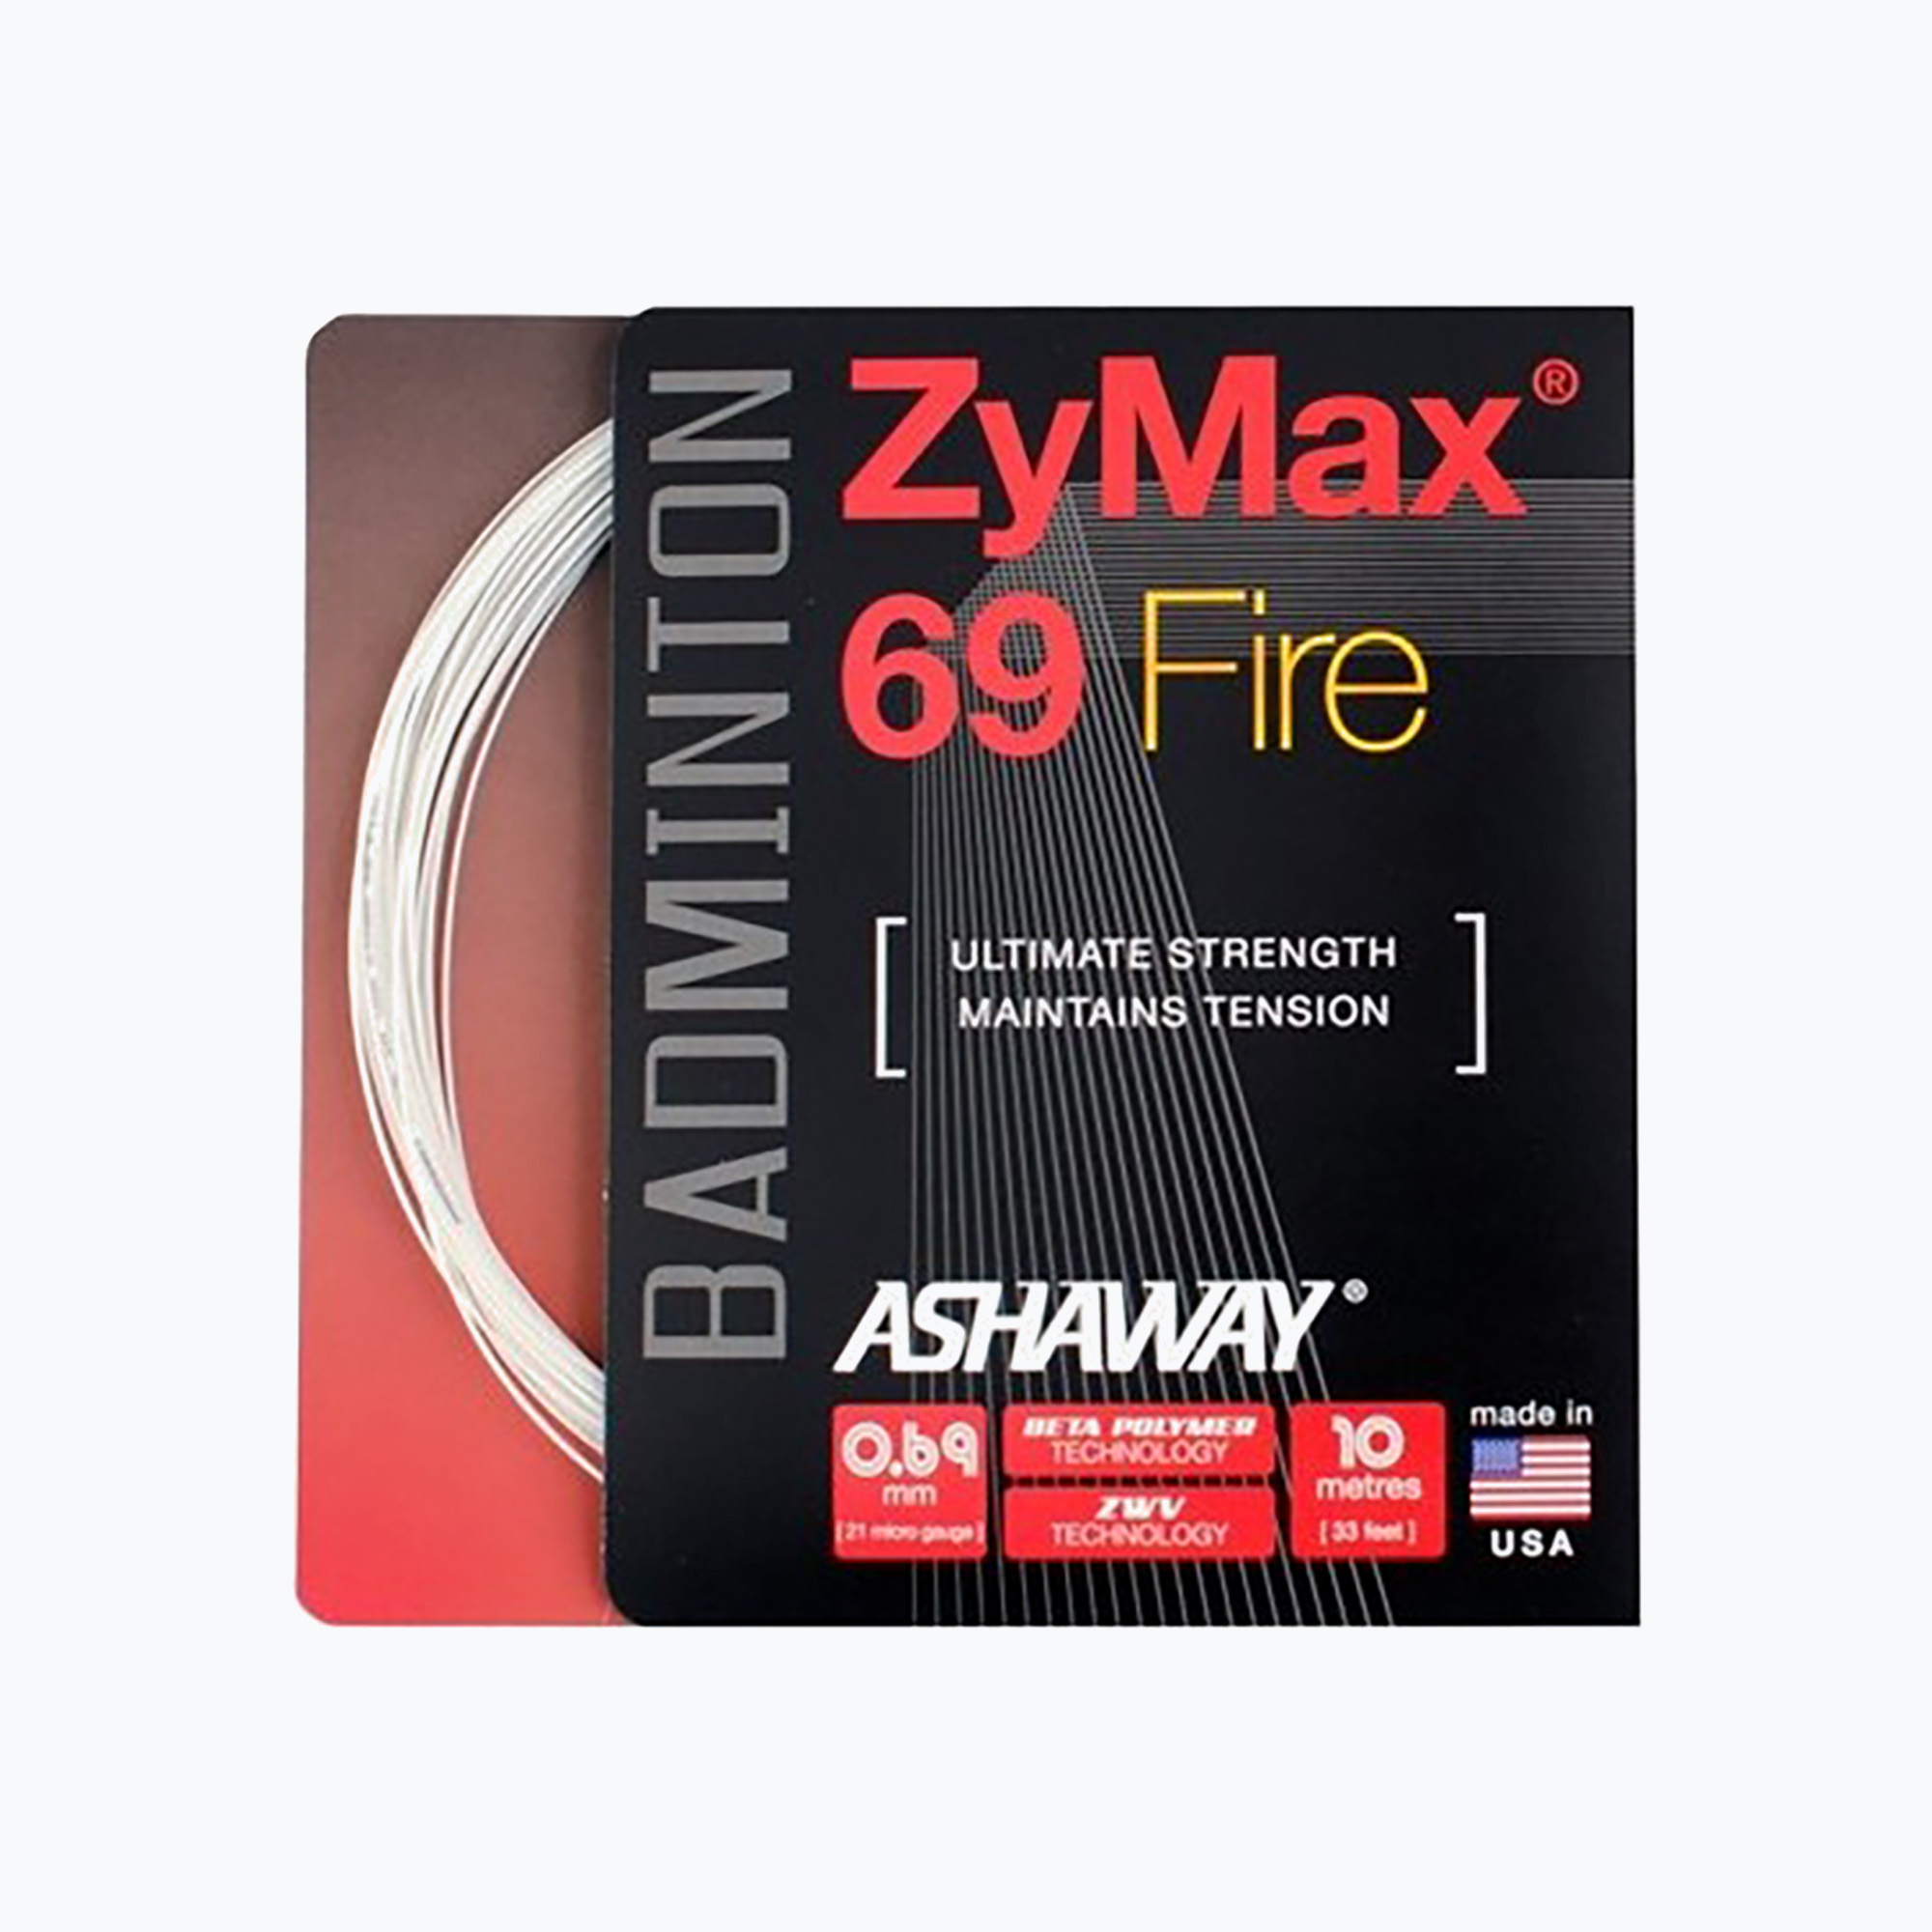 Cordon de badminton ASHAWAY ZyMax 69 Fire - set white